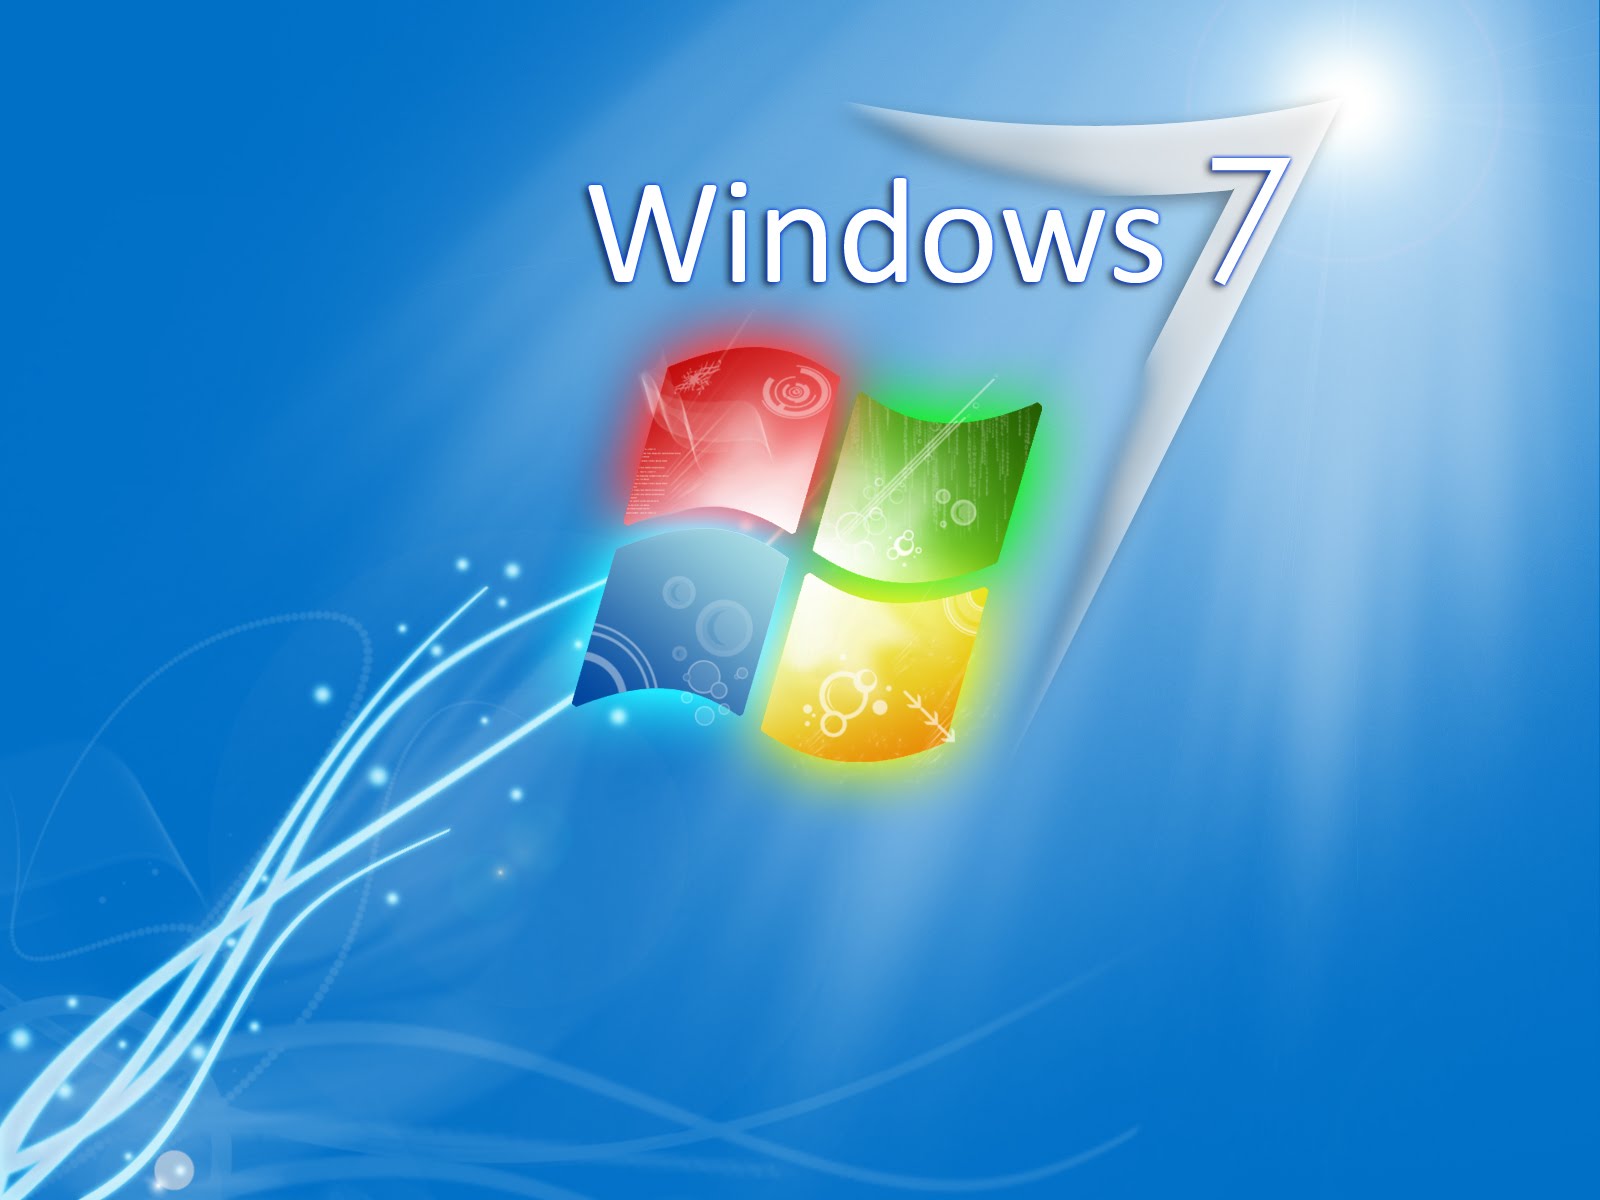 Windows 7 Wallpapers Part 2 - Gambar Menarik